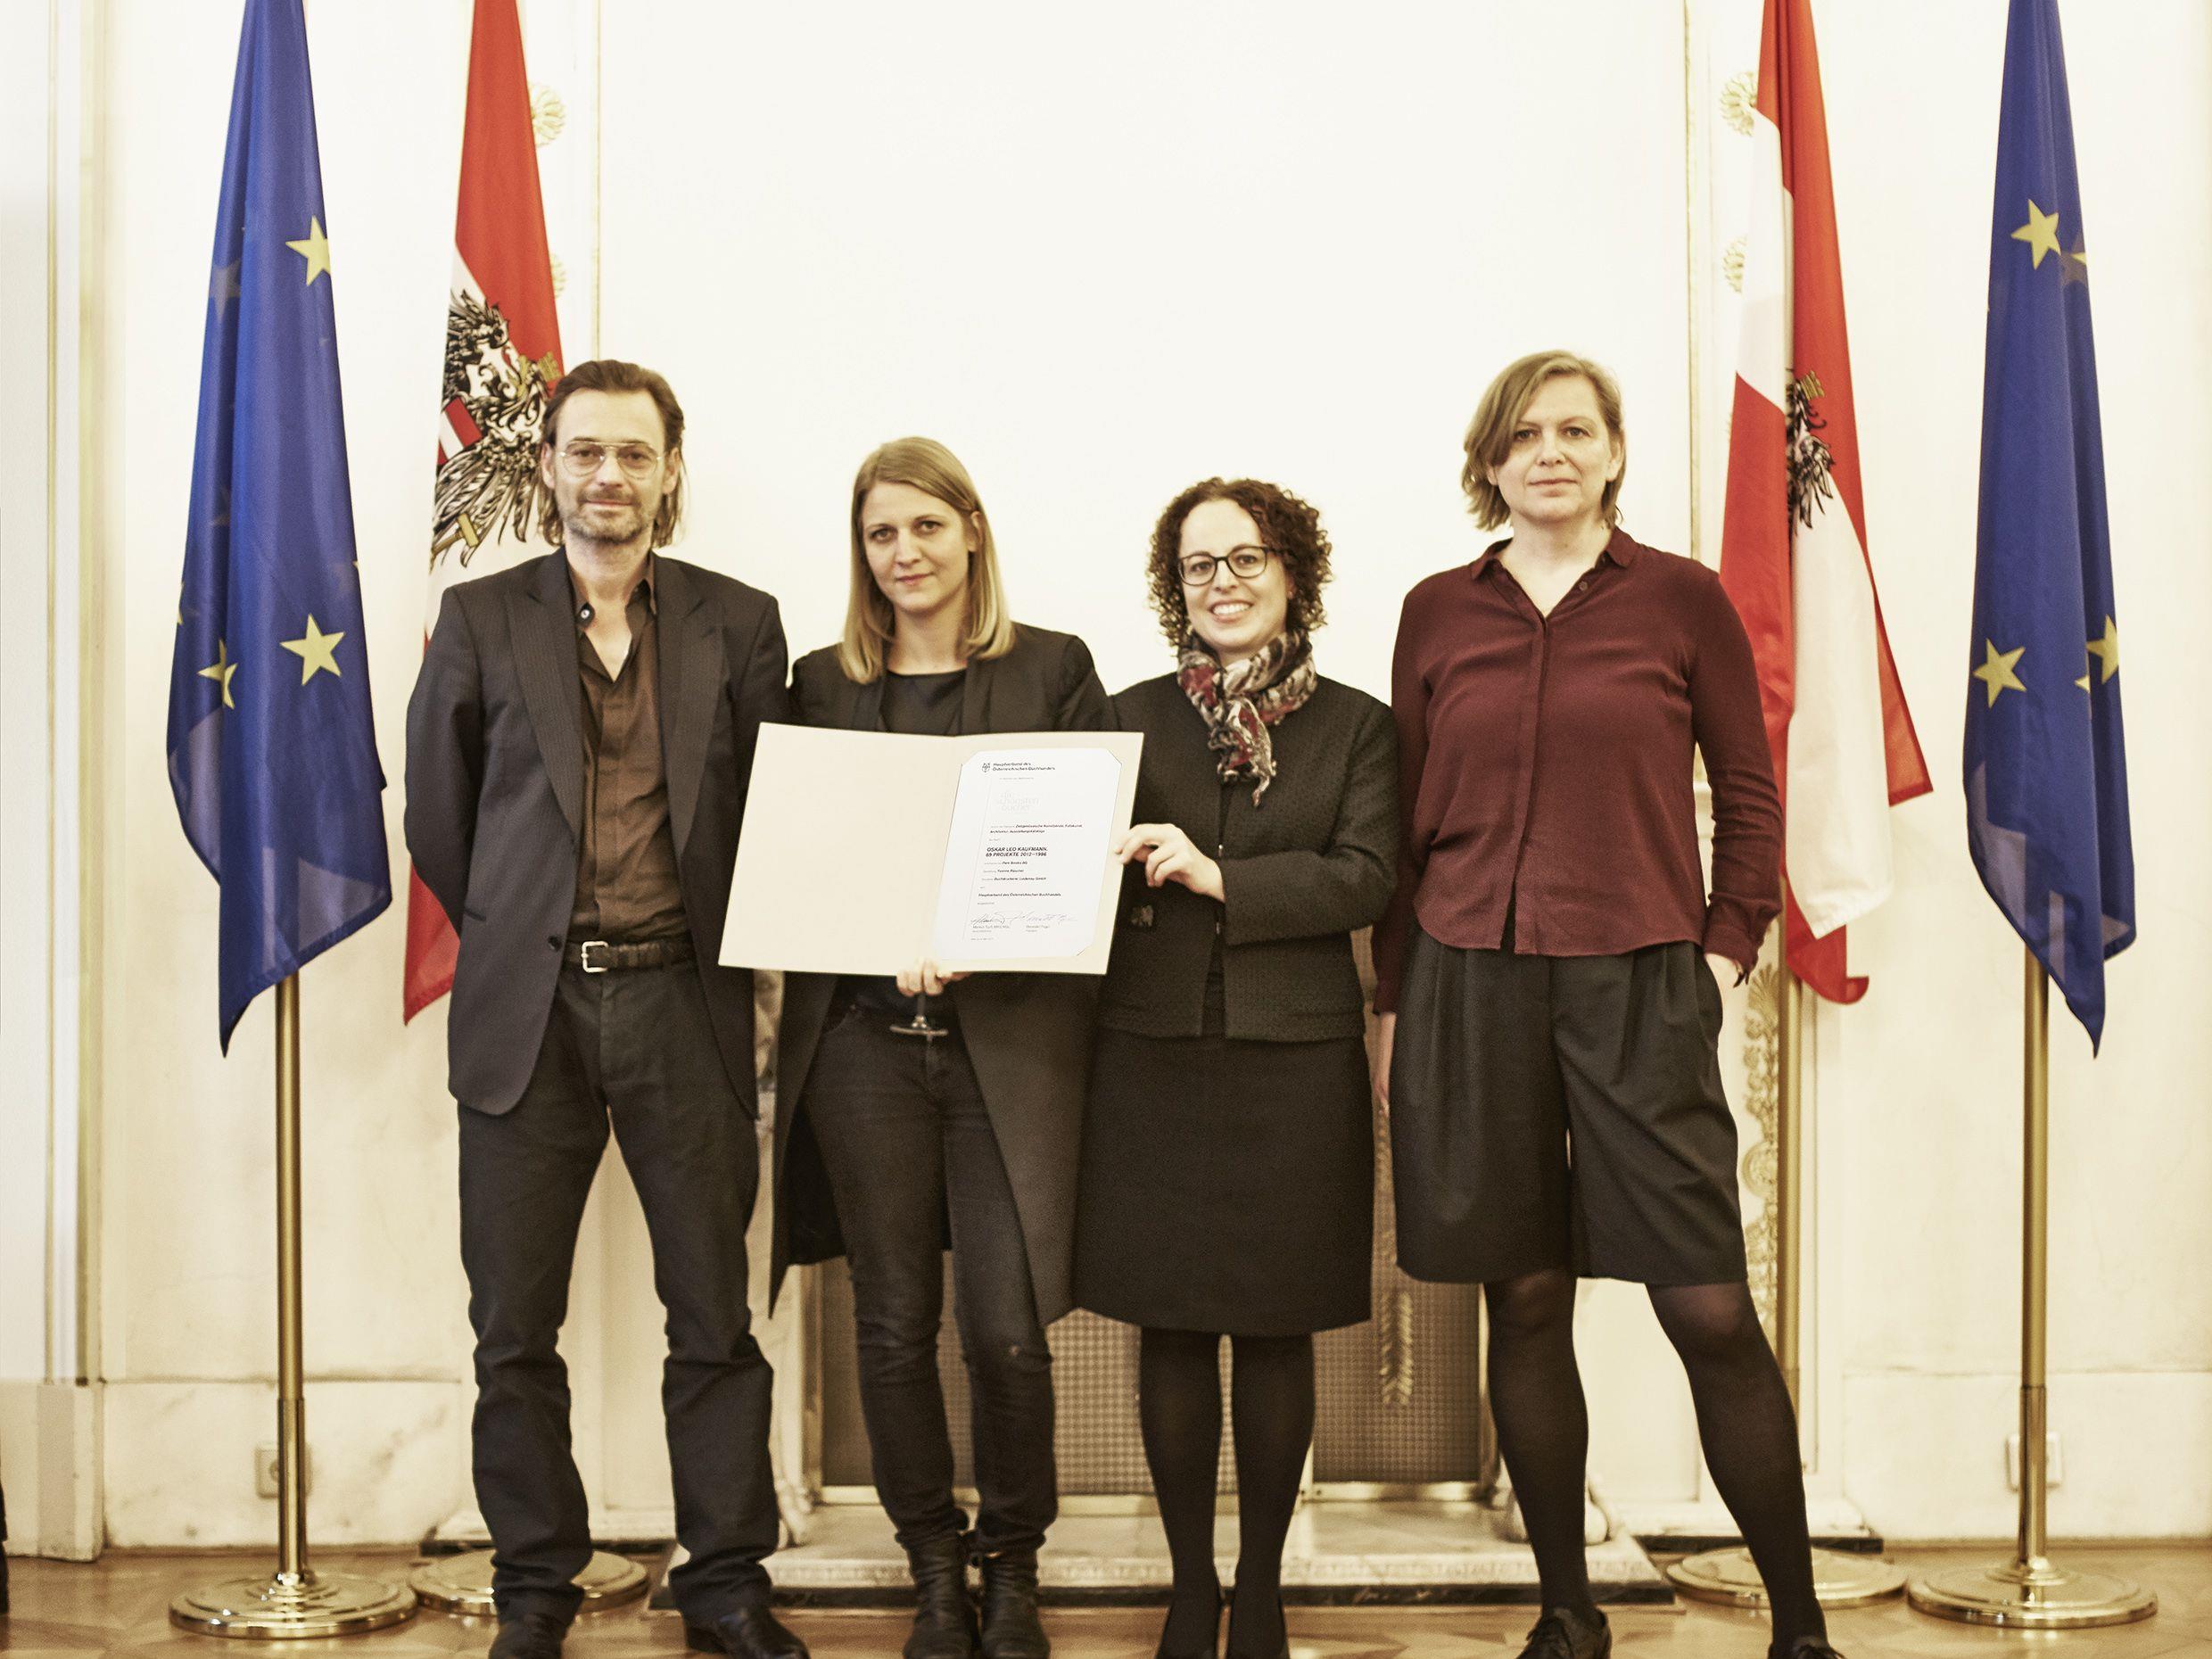 v.l.n.r. Architekt Oskar Leo Kaufmann, Grafikerin Yvonne Rüscher, Christine Schwarz-Fuchs (GF BuLu) und Eva Guttmann (Verlag Park Books) freuen sich über die Auszeichnung.